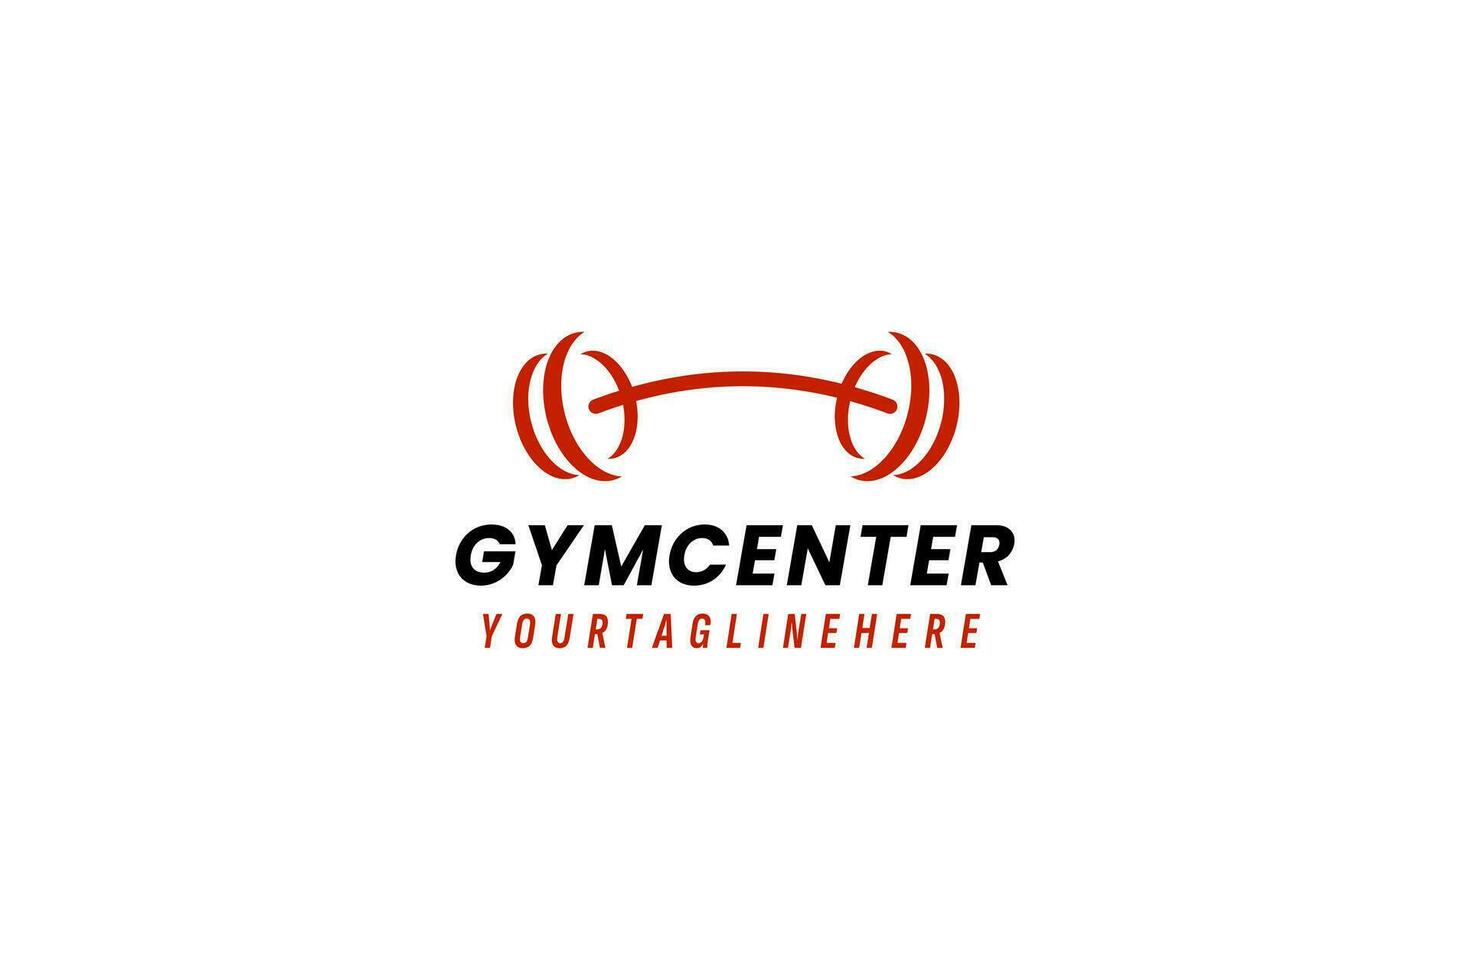 Gym centre logo vecteur icône illustration